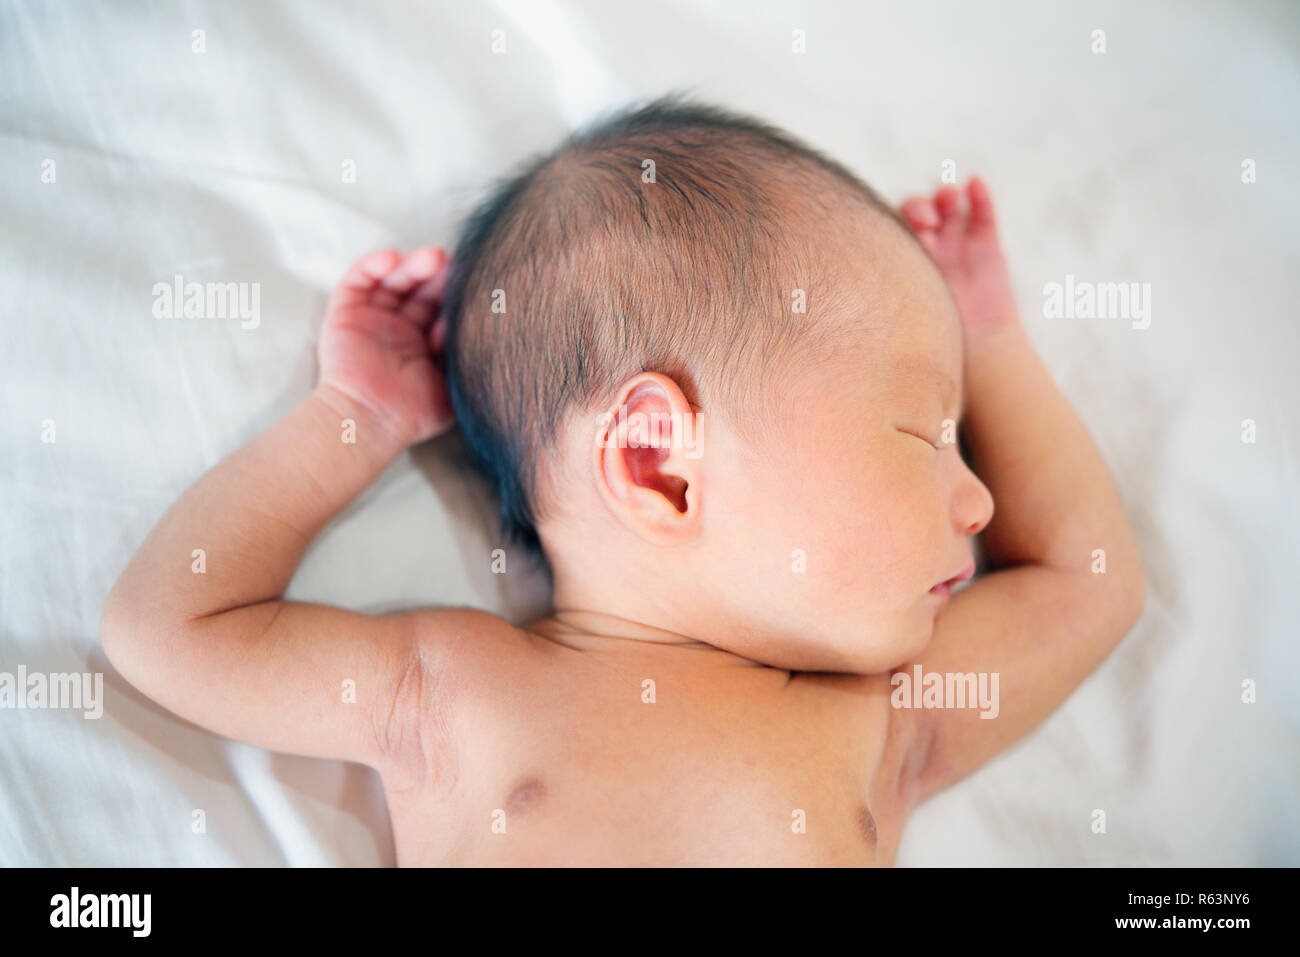 Schlafen neugeborene baby boy. Stockfoto